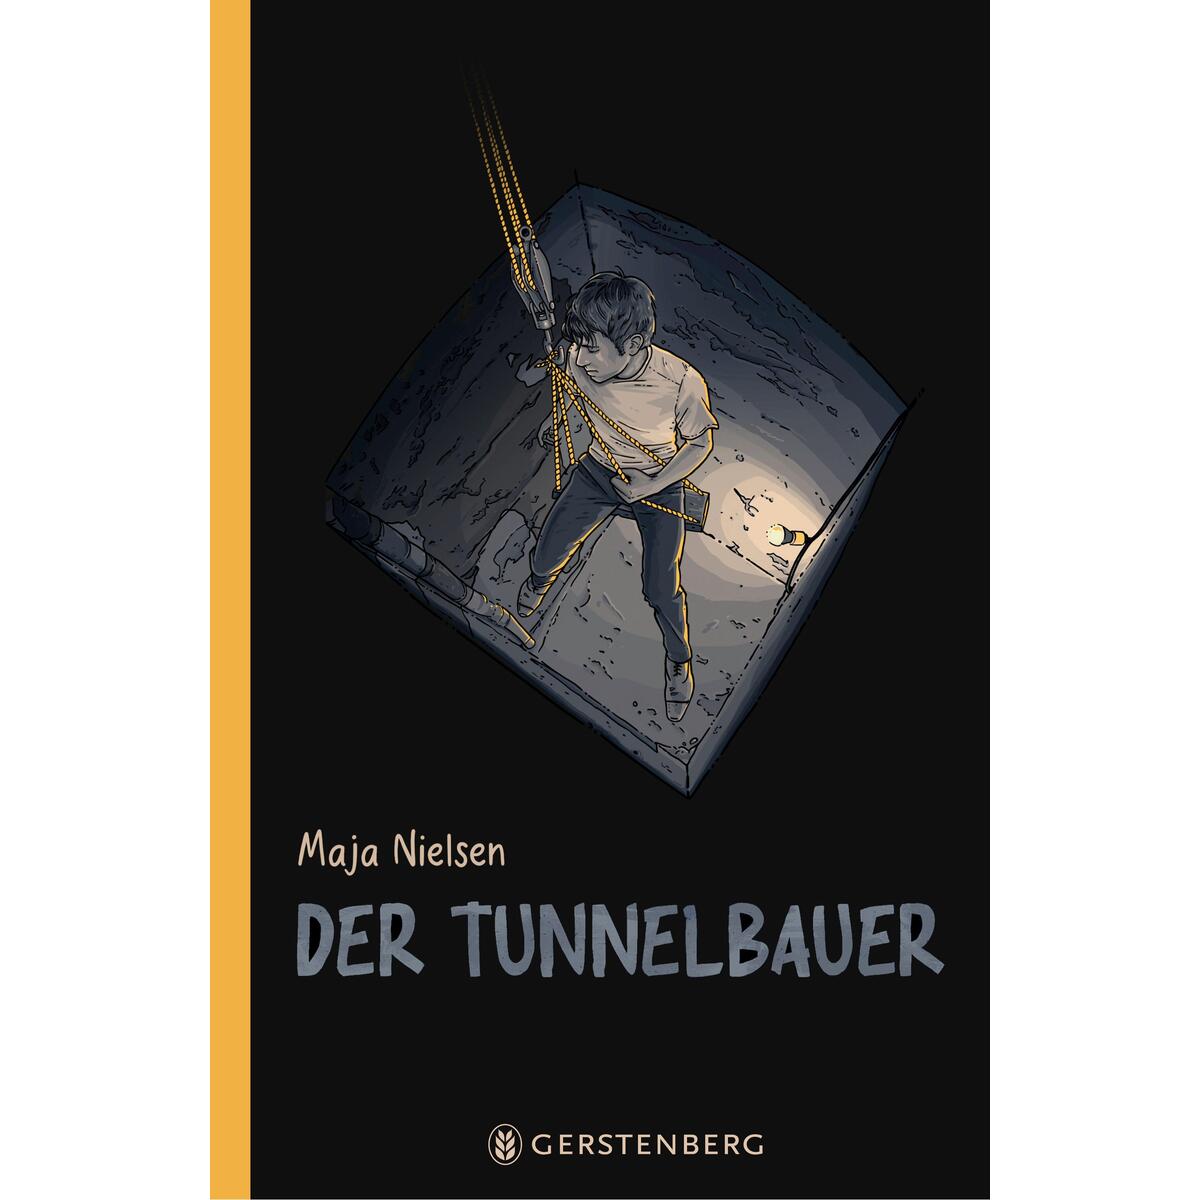 Der Tunnelbauer von Gerstenberg Verlag